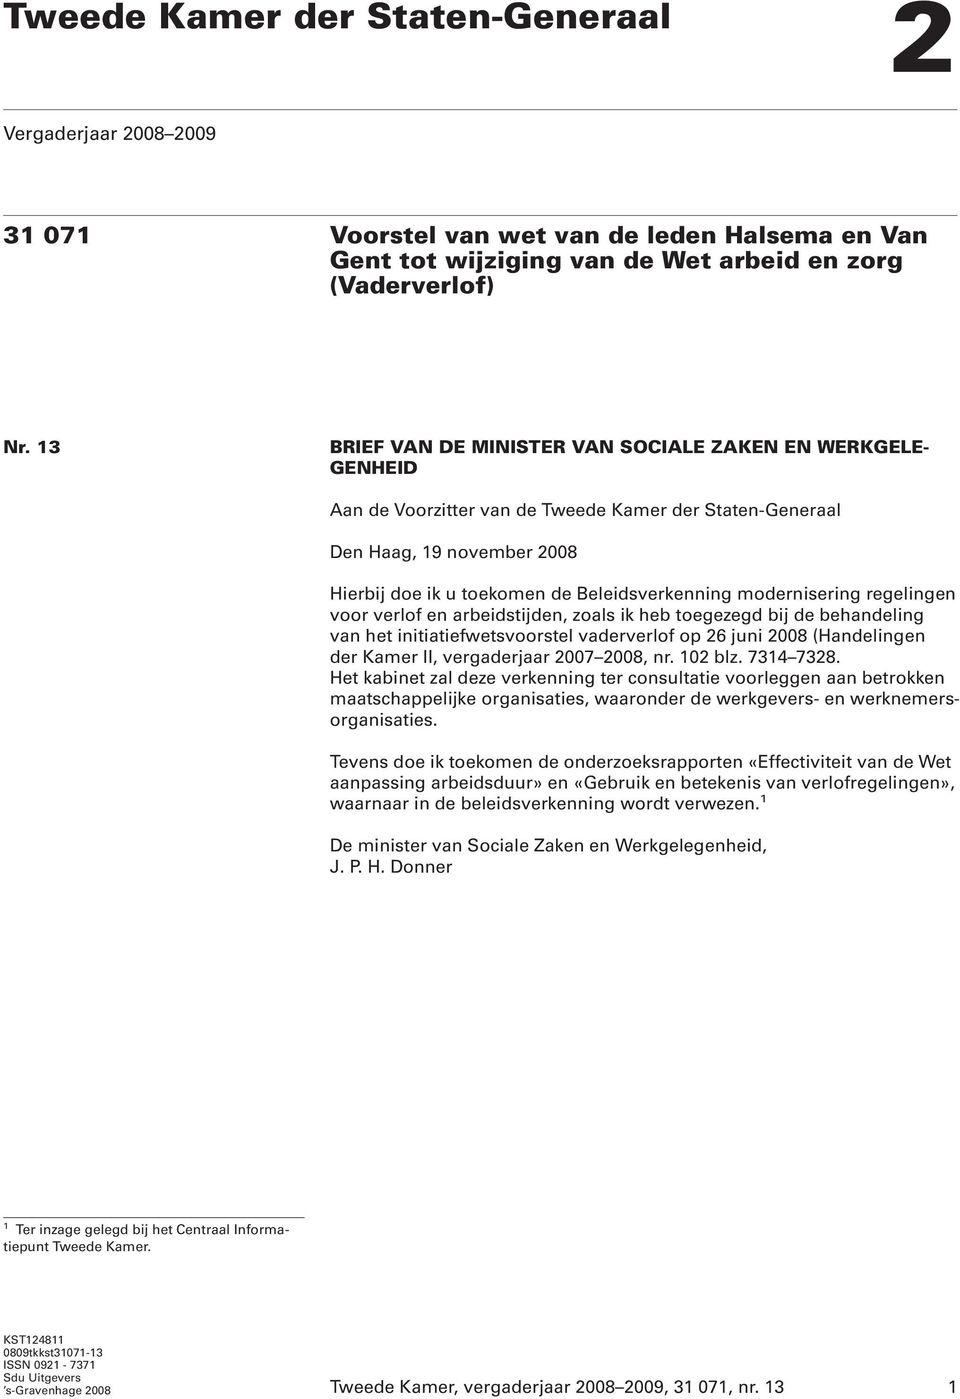 modernisering regelingen voor verlof en arbeidstijden, zoals ik heb toegezegd bij de behandeling van het initiatiefwetsvoorstel vaderverlof op 26 juni 2008 (Handelingen der Kamer II, vergaderjaar